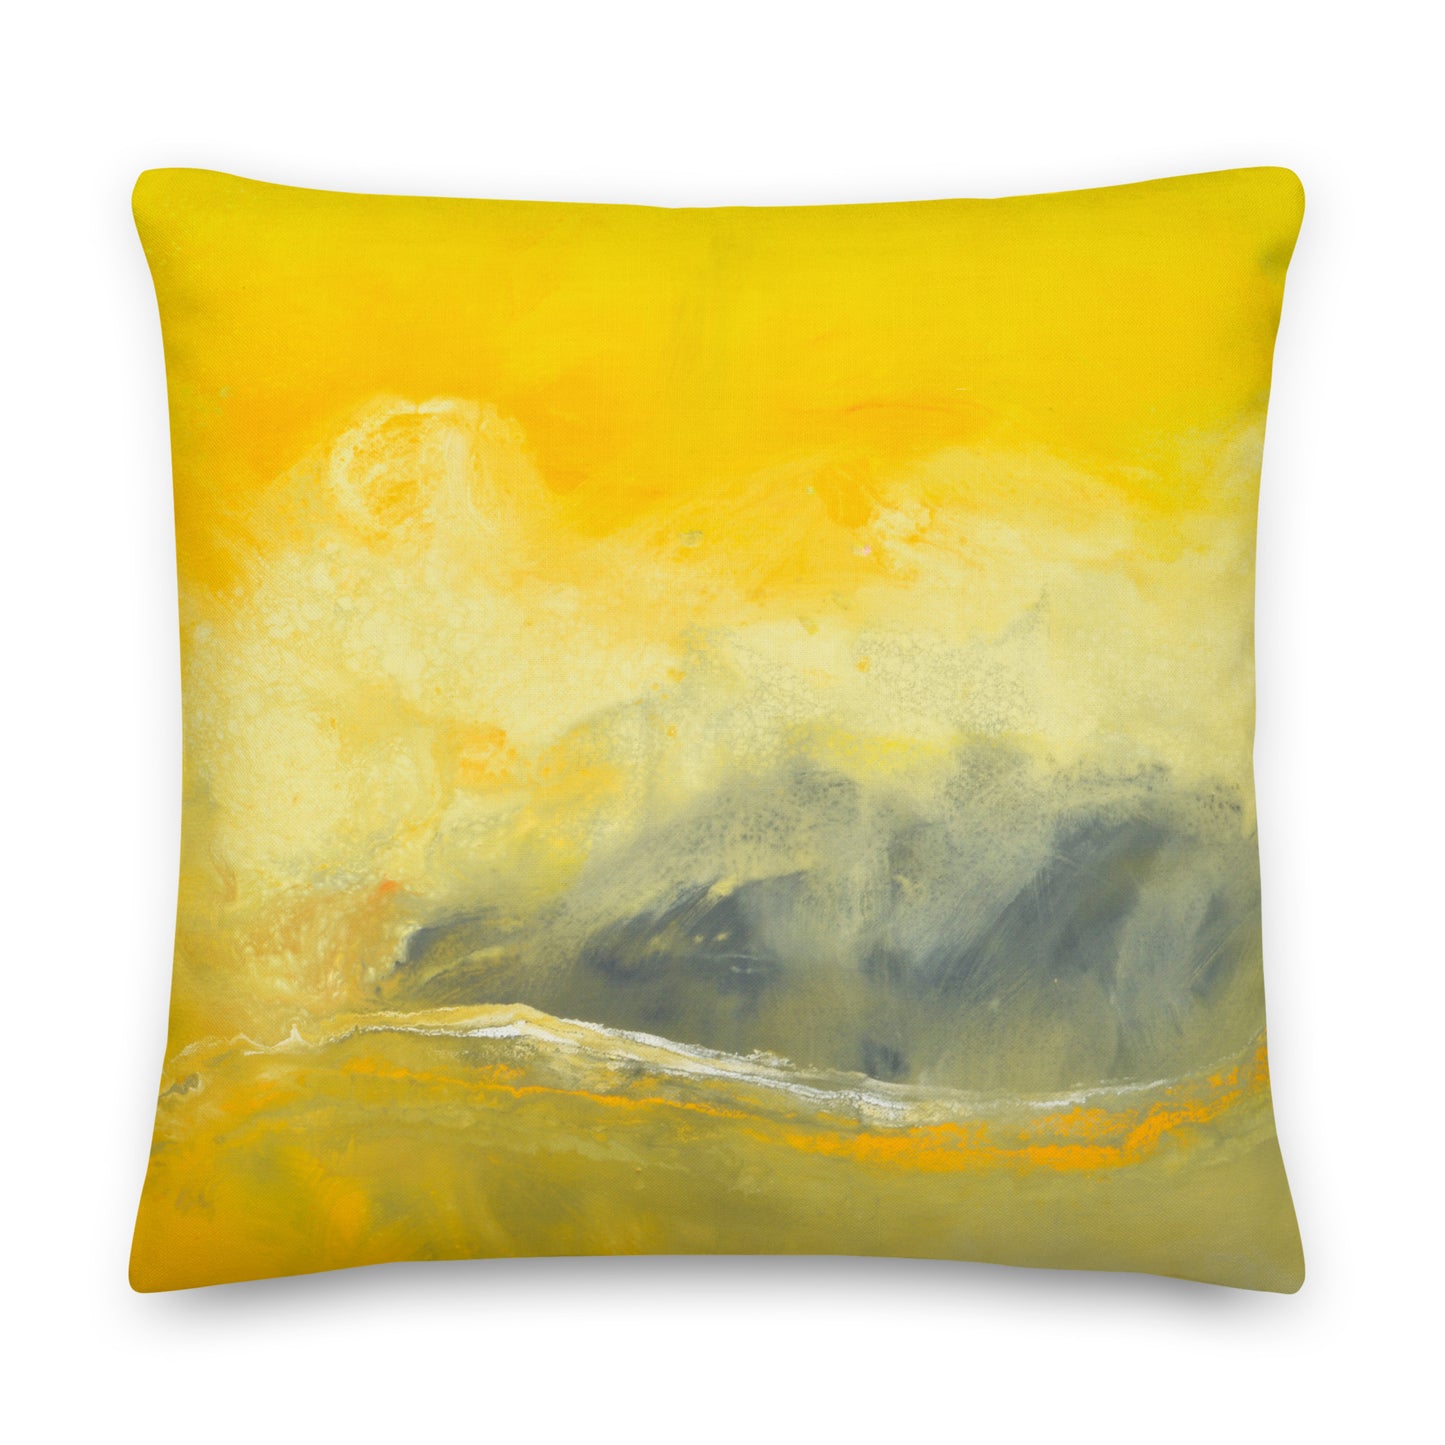 Travesseiro Premium - design amarelo e cinza